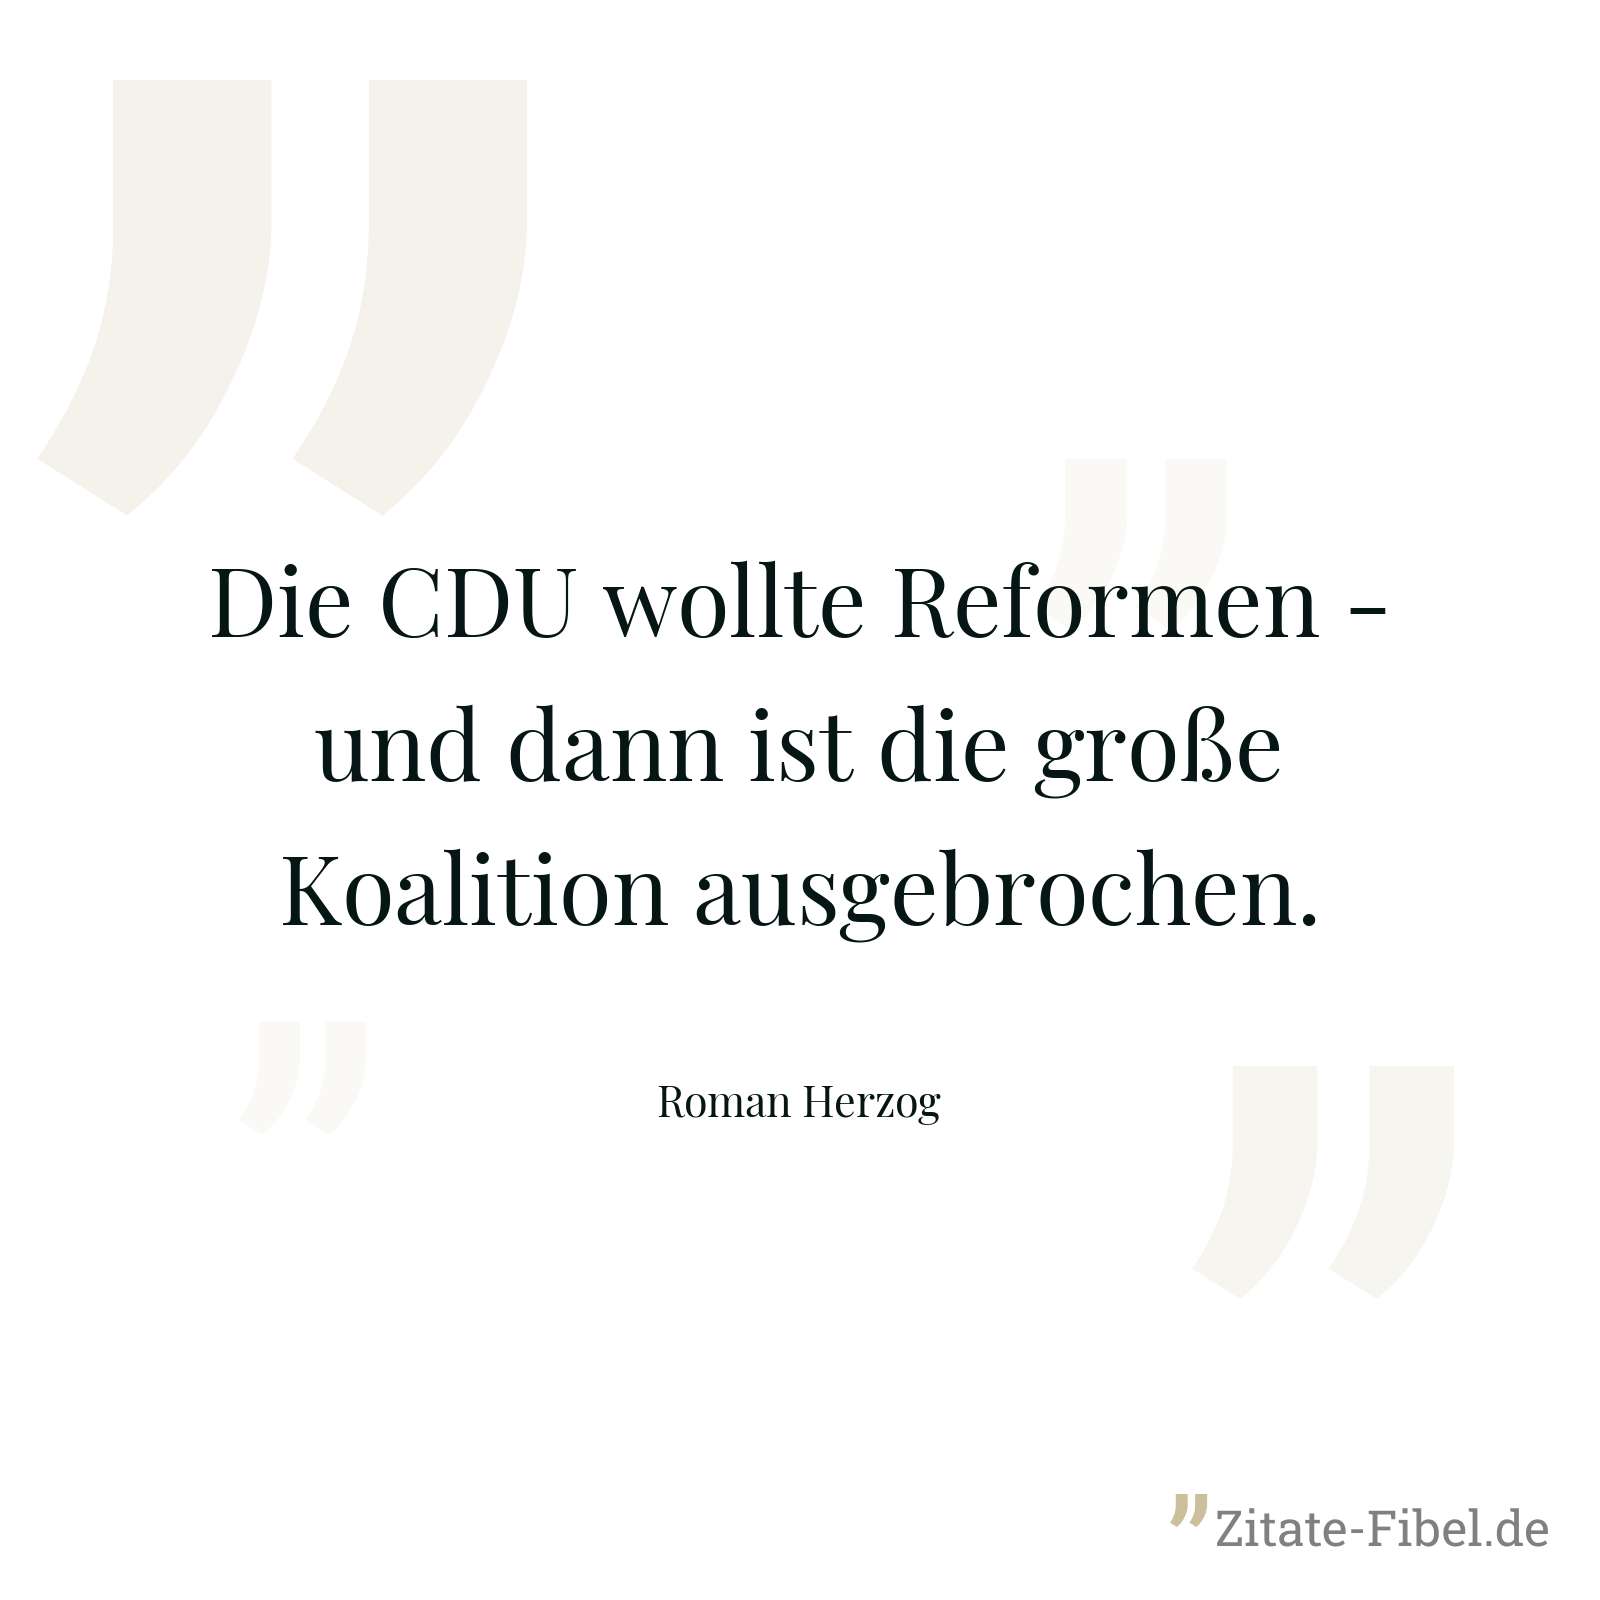 Die CDU wollte Reformen - und dann ist die große Koalition ausgebrochen. - Roman Herzog